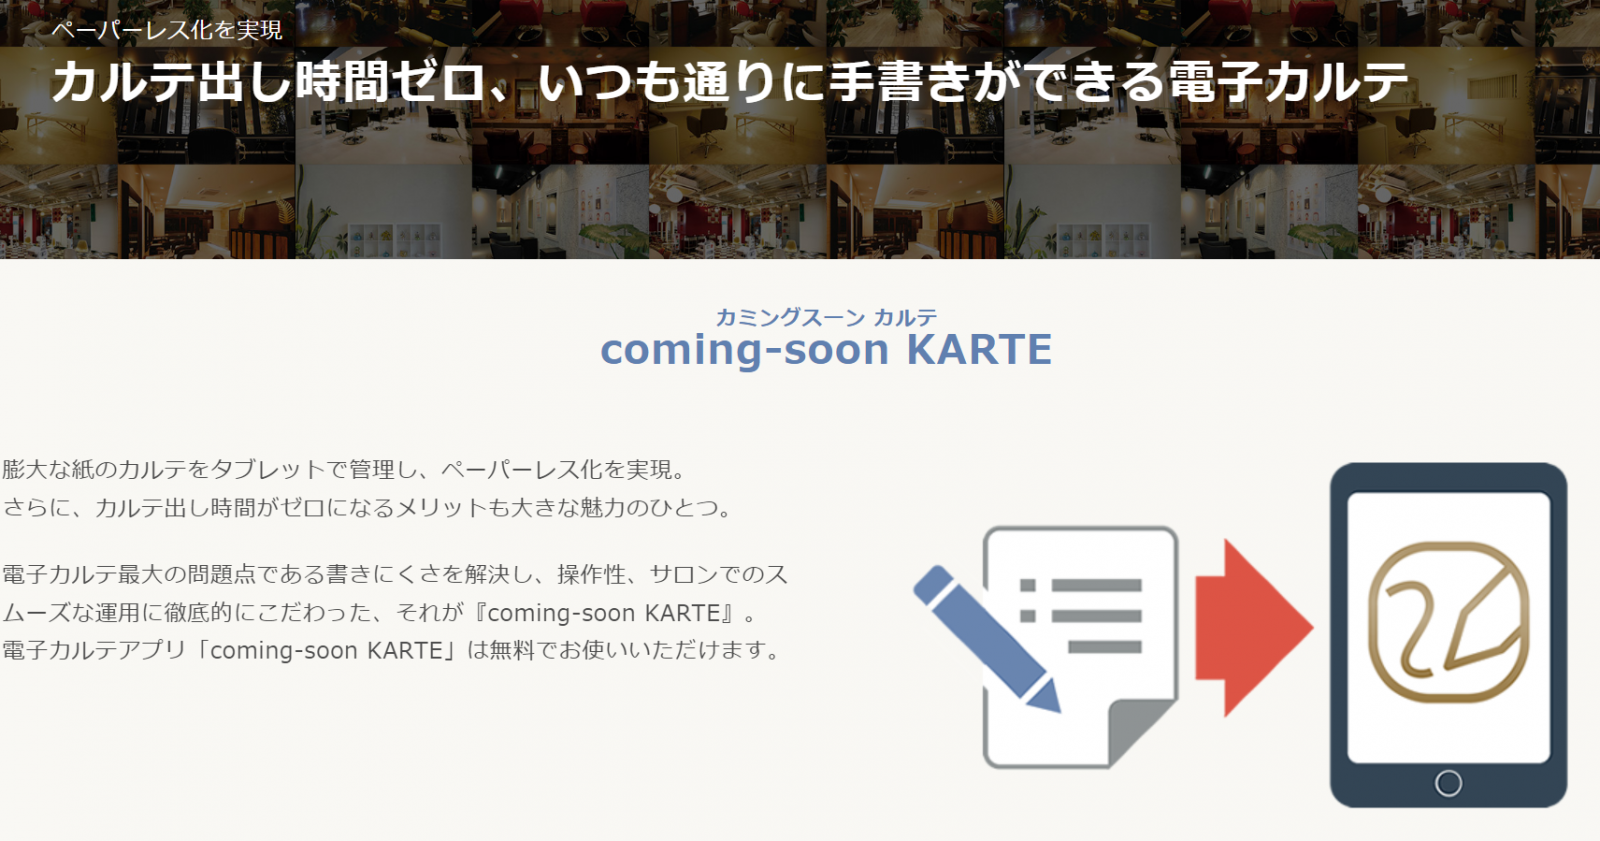 coming-soon-karte